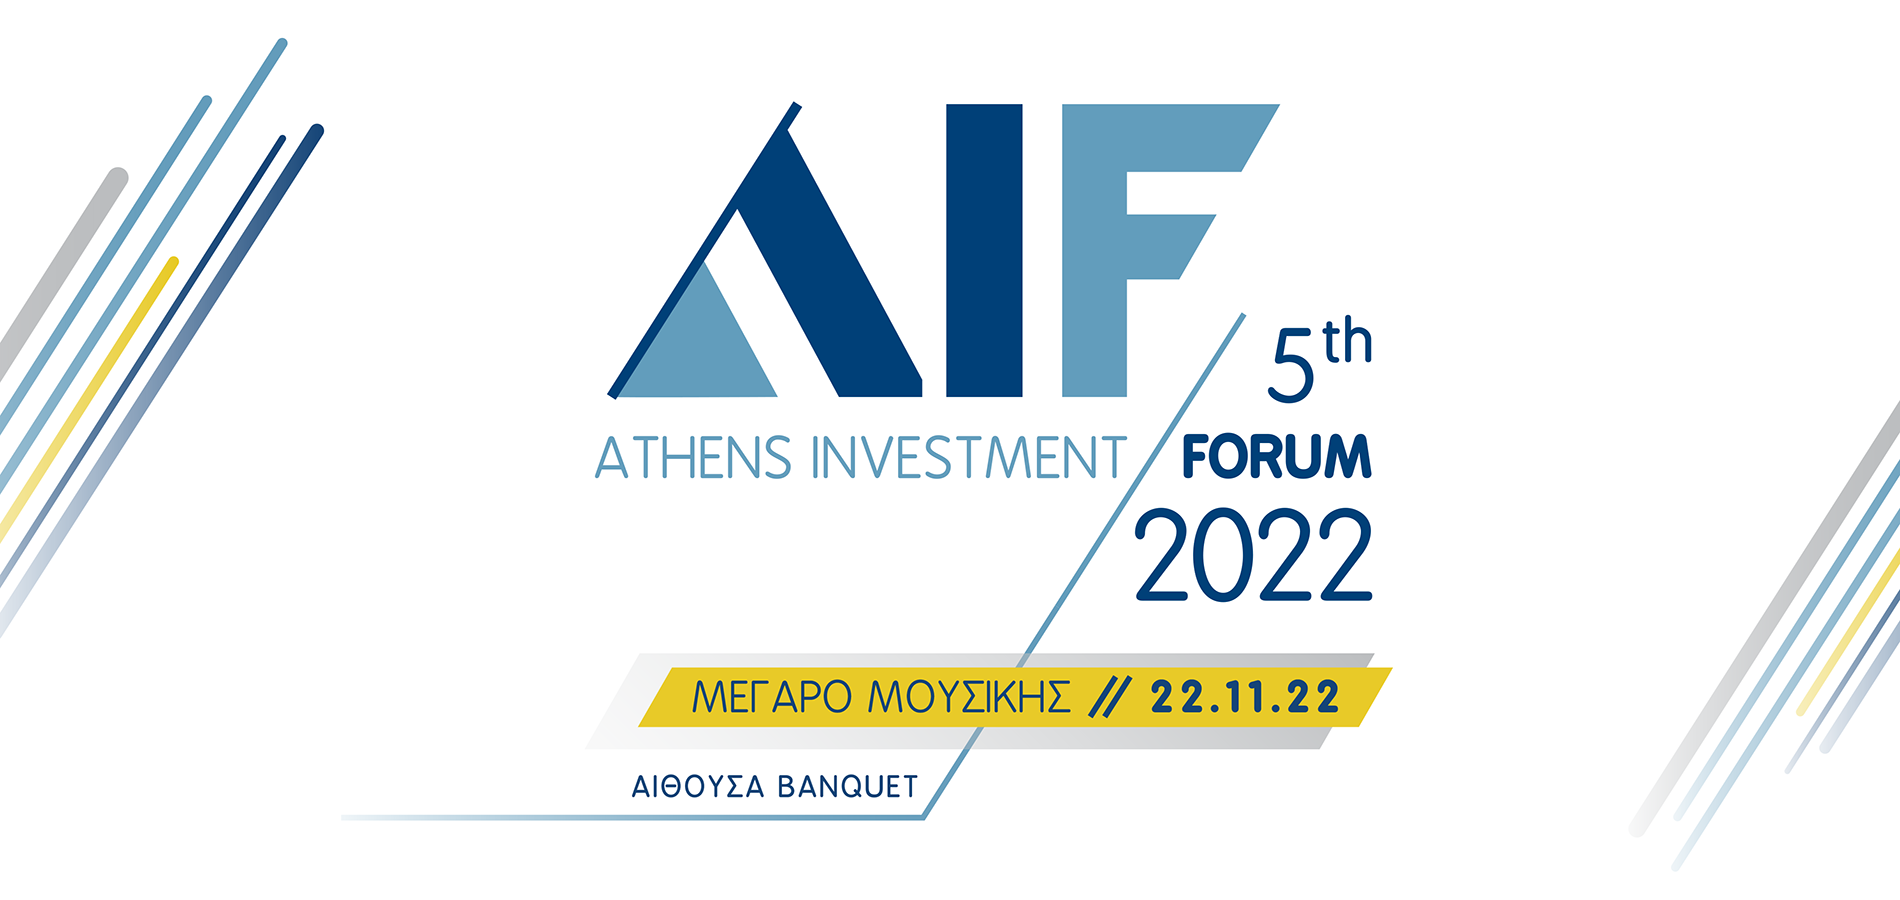 5ο Athens Investment Forum – Σταϊκούρας: Η χώρα αναπτύσσεται ισχυρά το 2022, με υψηλότερες αντοχές από τον Ευρωπαϊκό μέσο όρο